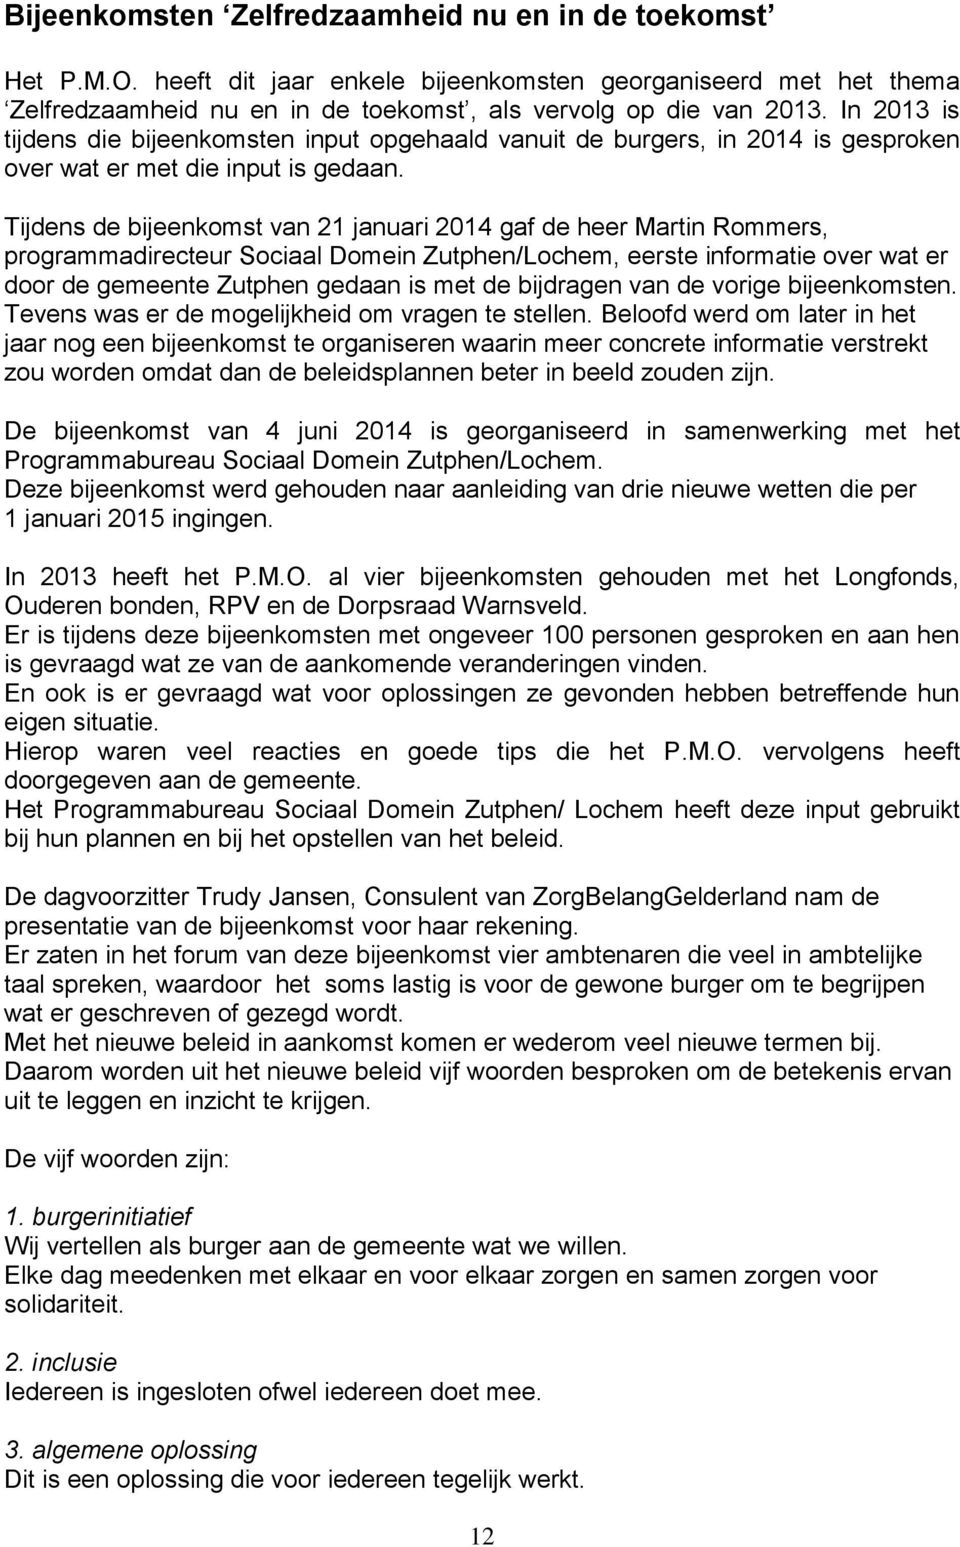 Tijdens de bijeenkomst van 21 januari 2014 gaf de heer Martin Rommers, programmadirecteur Sociaal Domein Zutphen/Lochem, eerste informatie over wat er door de gemeente Zutphen gedaan is met de